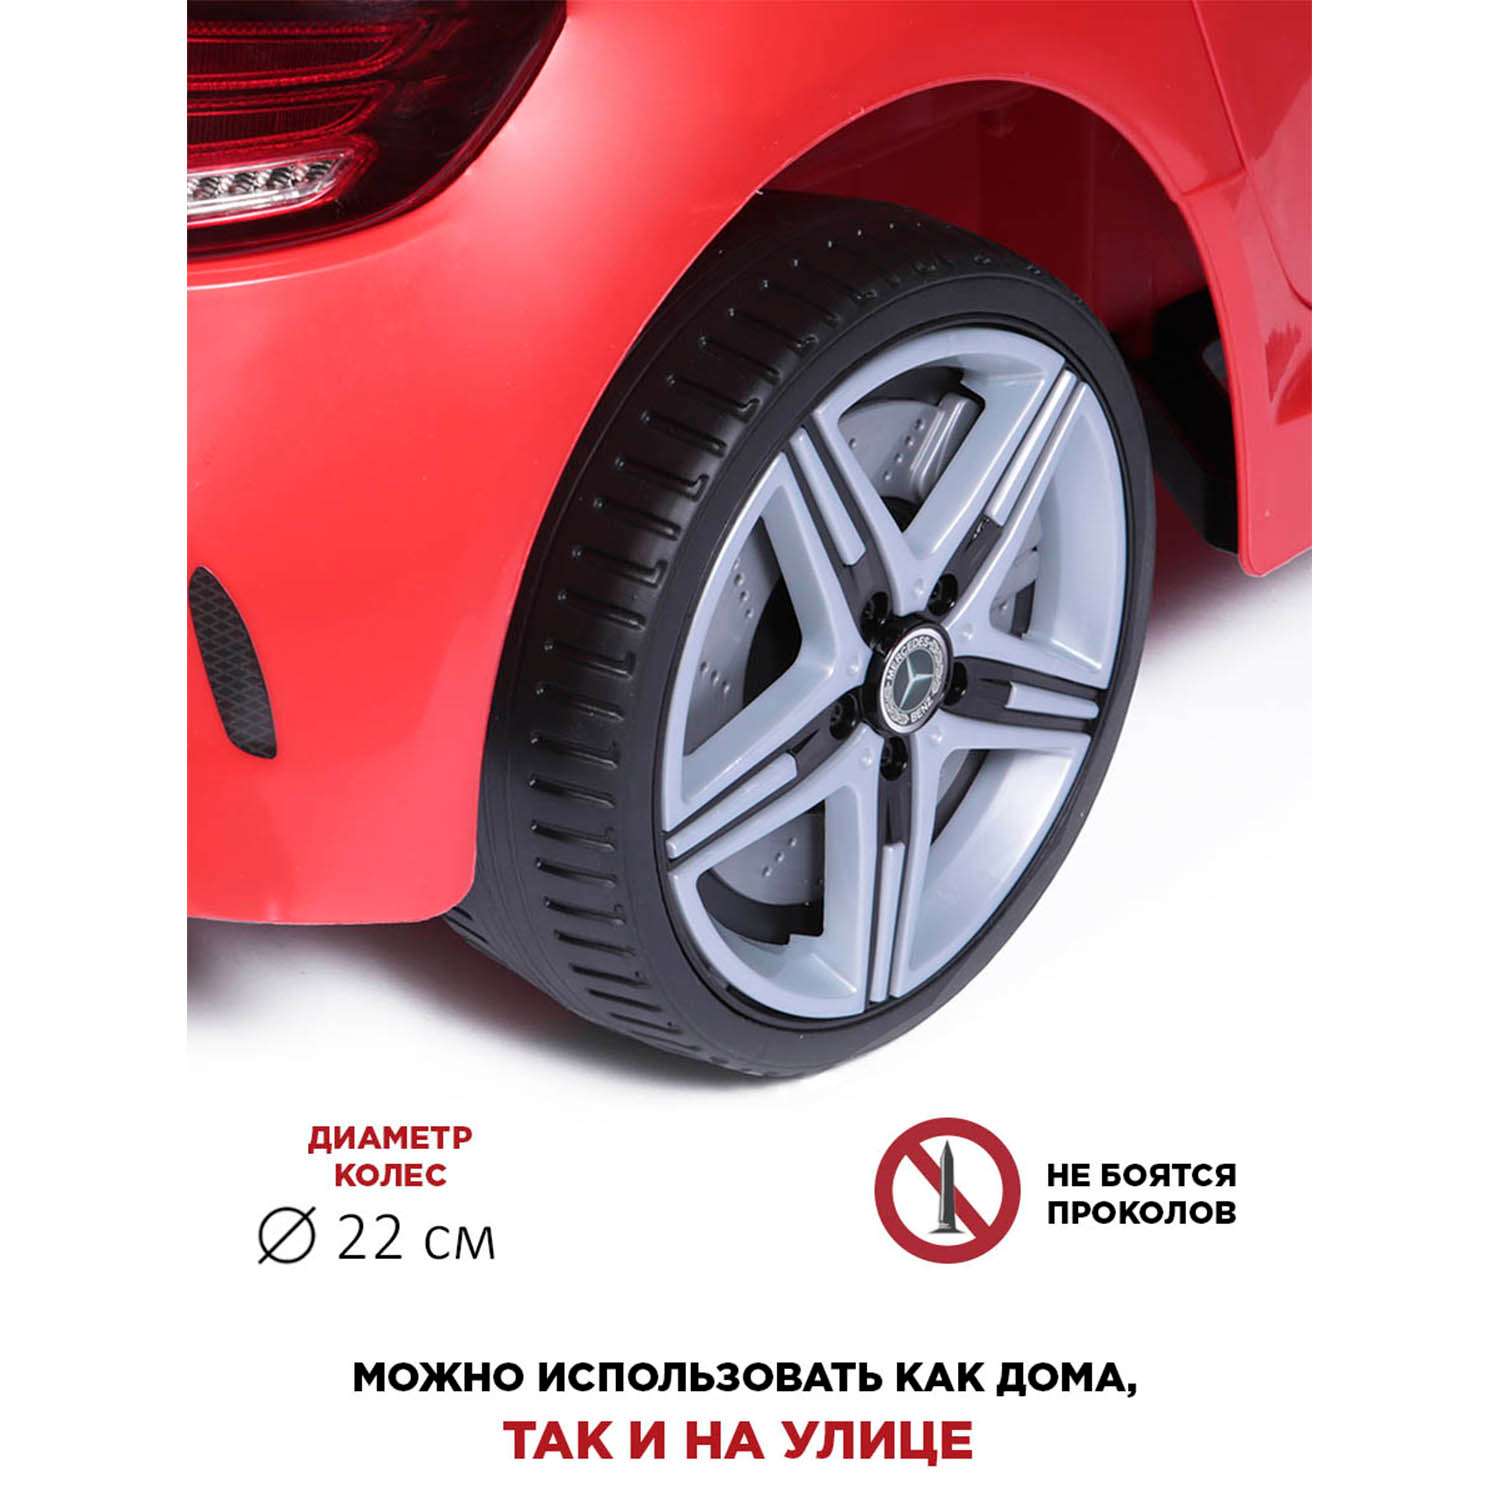 Электромобиль BabyCare Mercedes резиновые колеса красный - фото 12